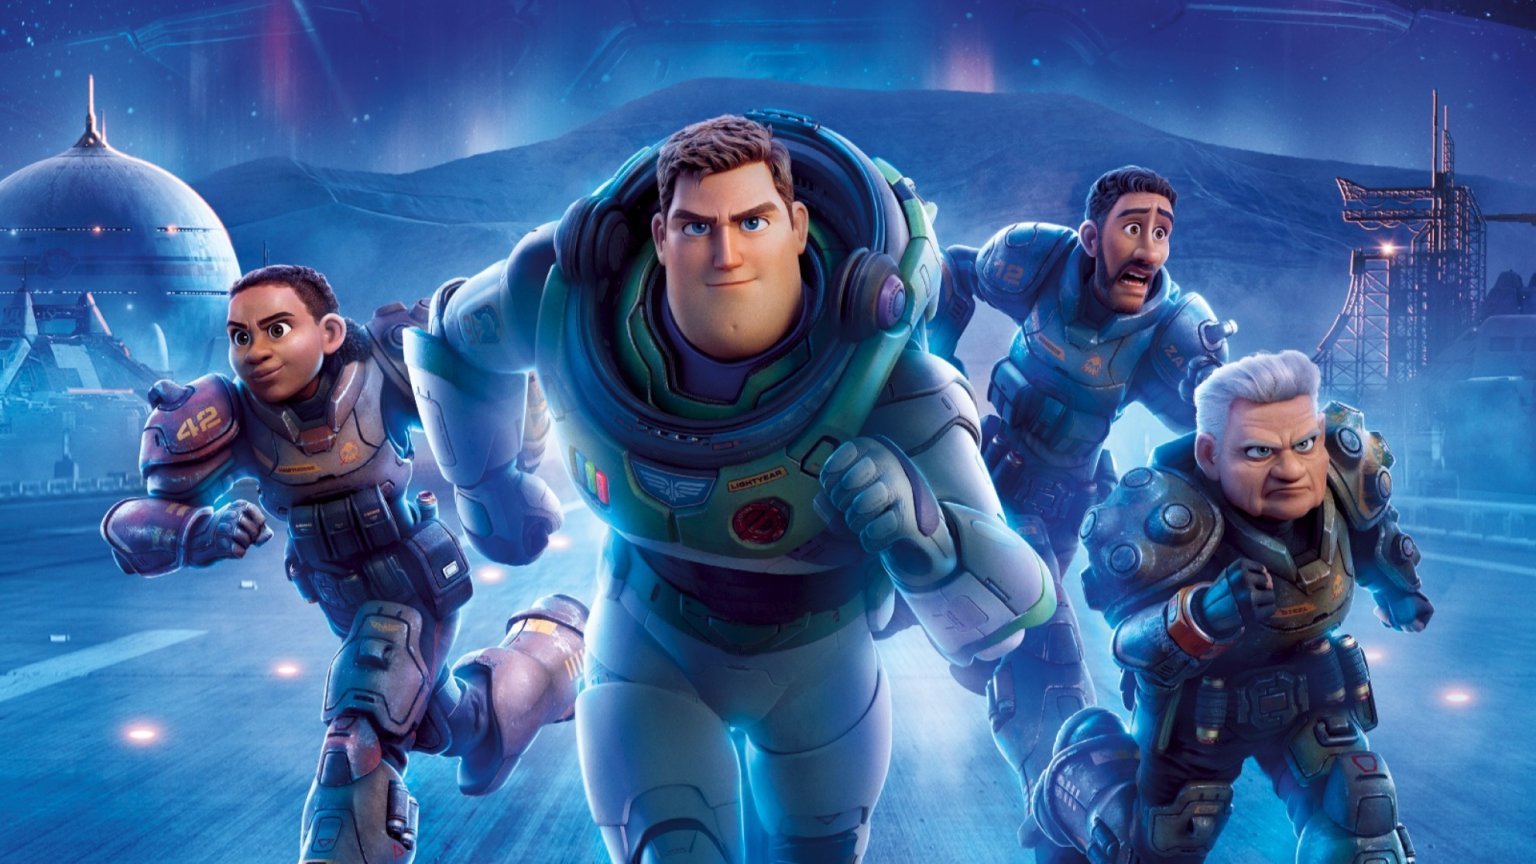 Nieuwe docu over Buzz Lightyear massaal bekeken op Disney+ voor de release van nieuwe 'Toy Story'-film